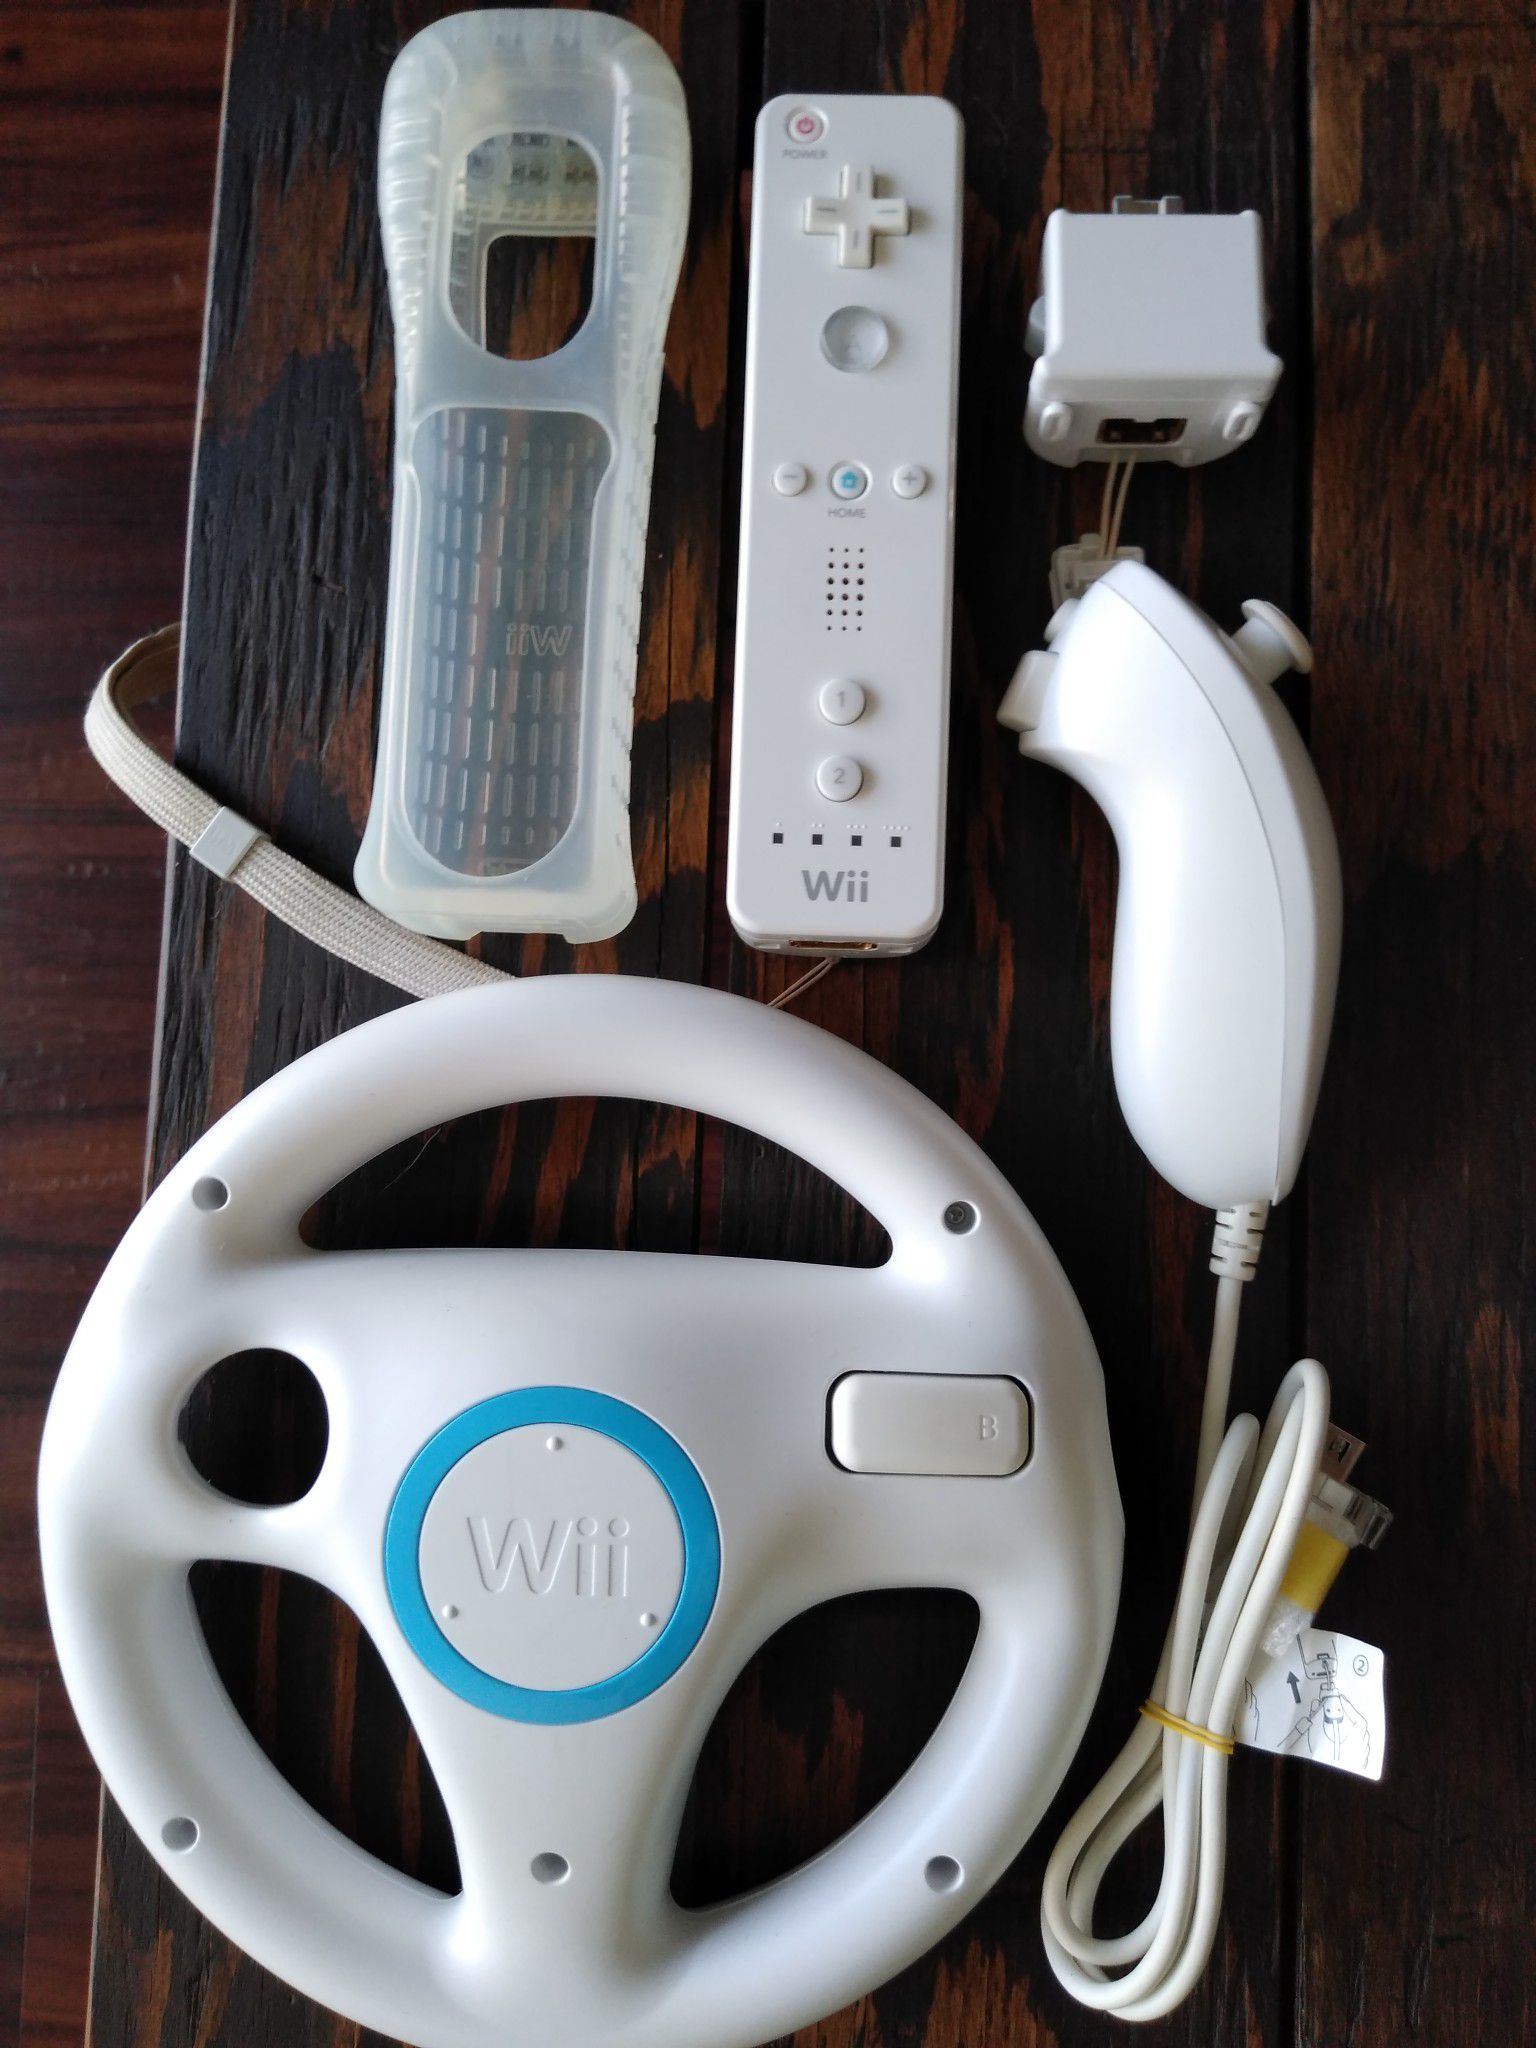 Wii accessories